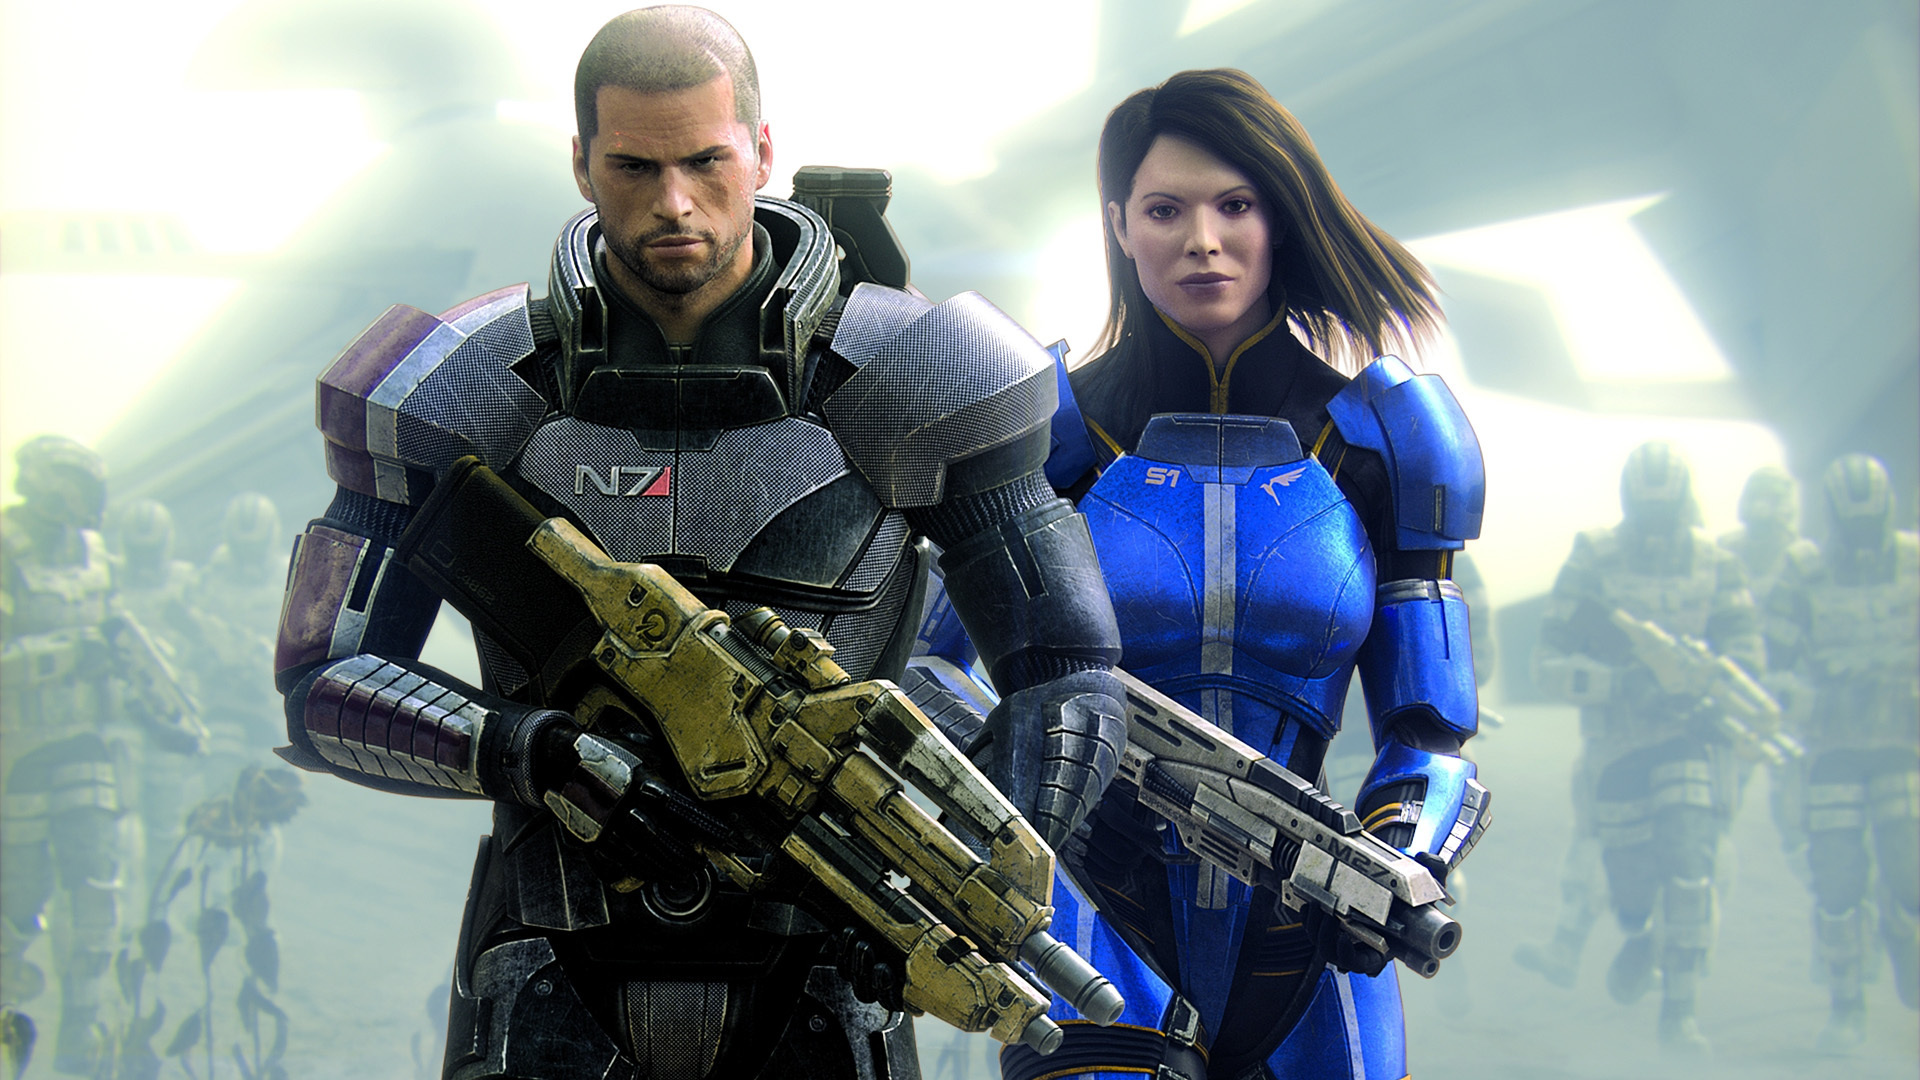 Mass Effect 2 , HD Wallpaper & Backgrounds